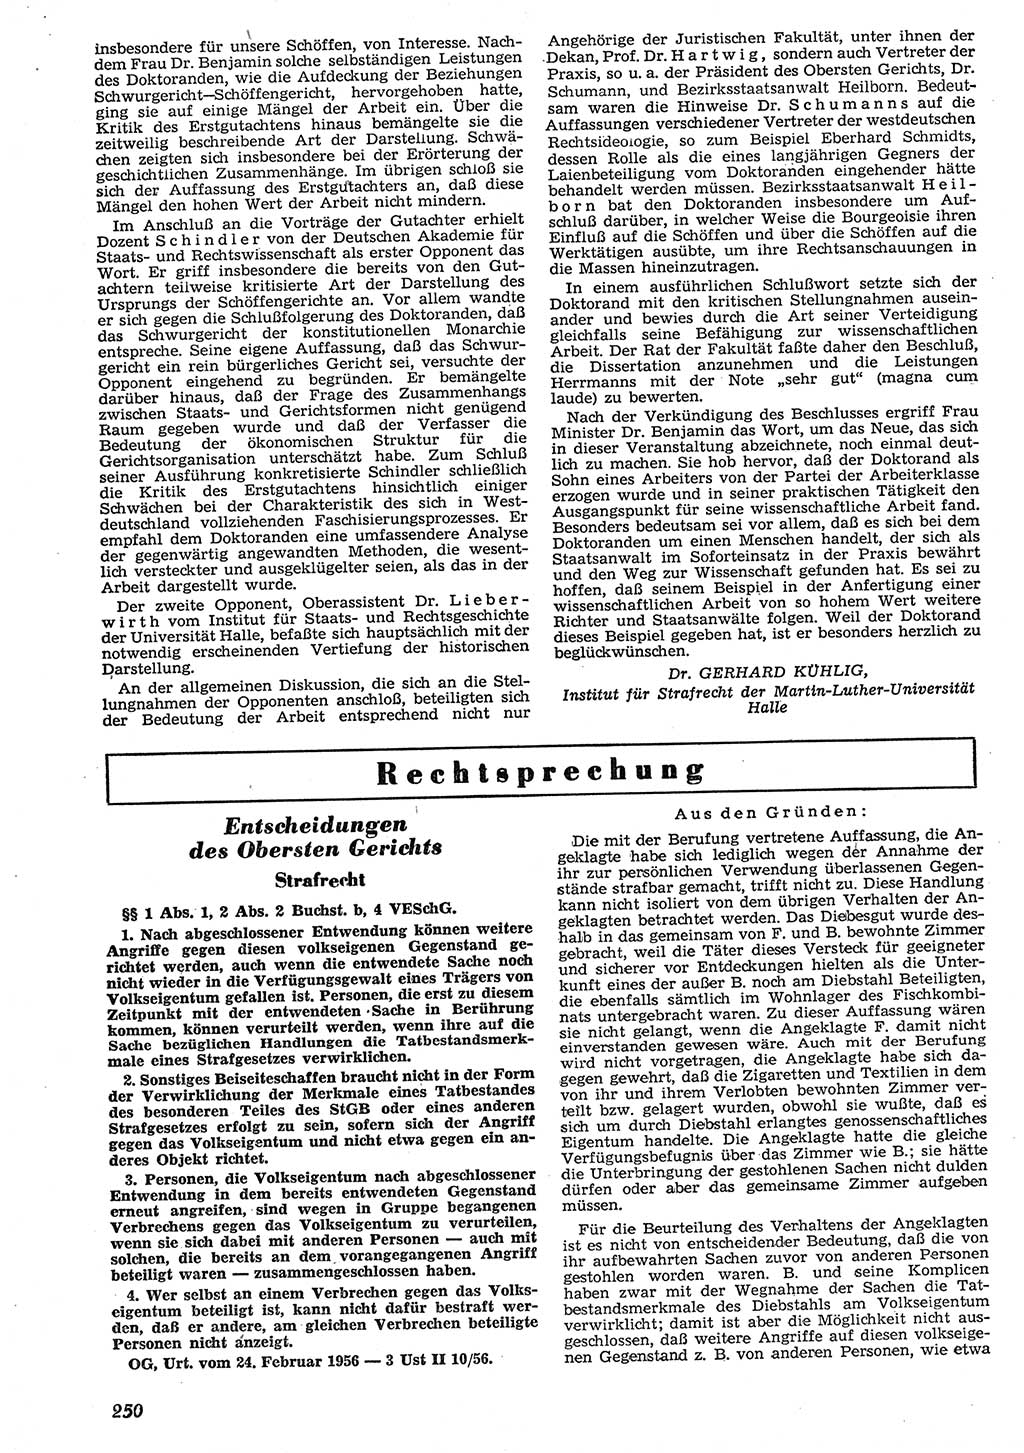 Neue Justiz (NJ), Zeitschrift für Recht und Rechtswissenschaft [Deutsche Demokratische Republik (DDR)], 10. Jahrgang 1956, Seite 250 (NJ DDR 1956, S. 250)